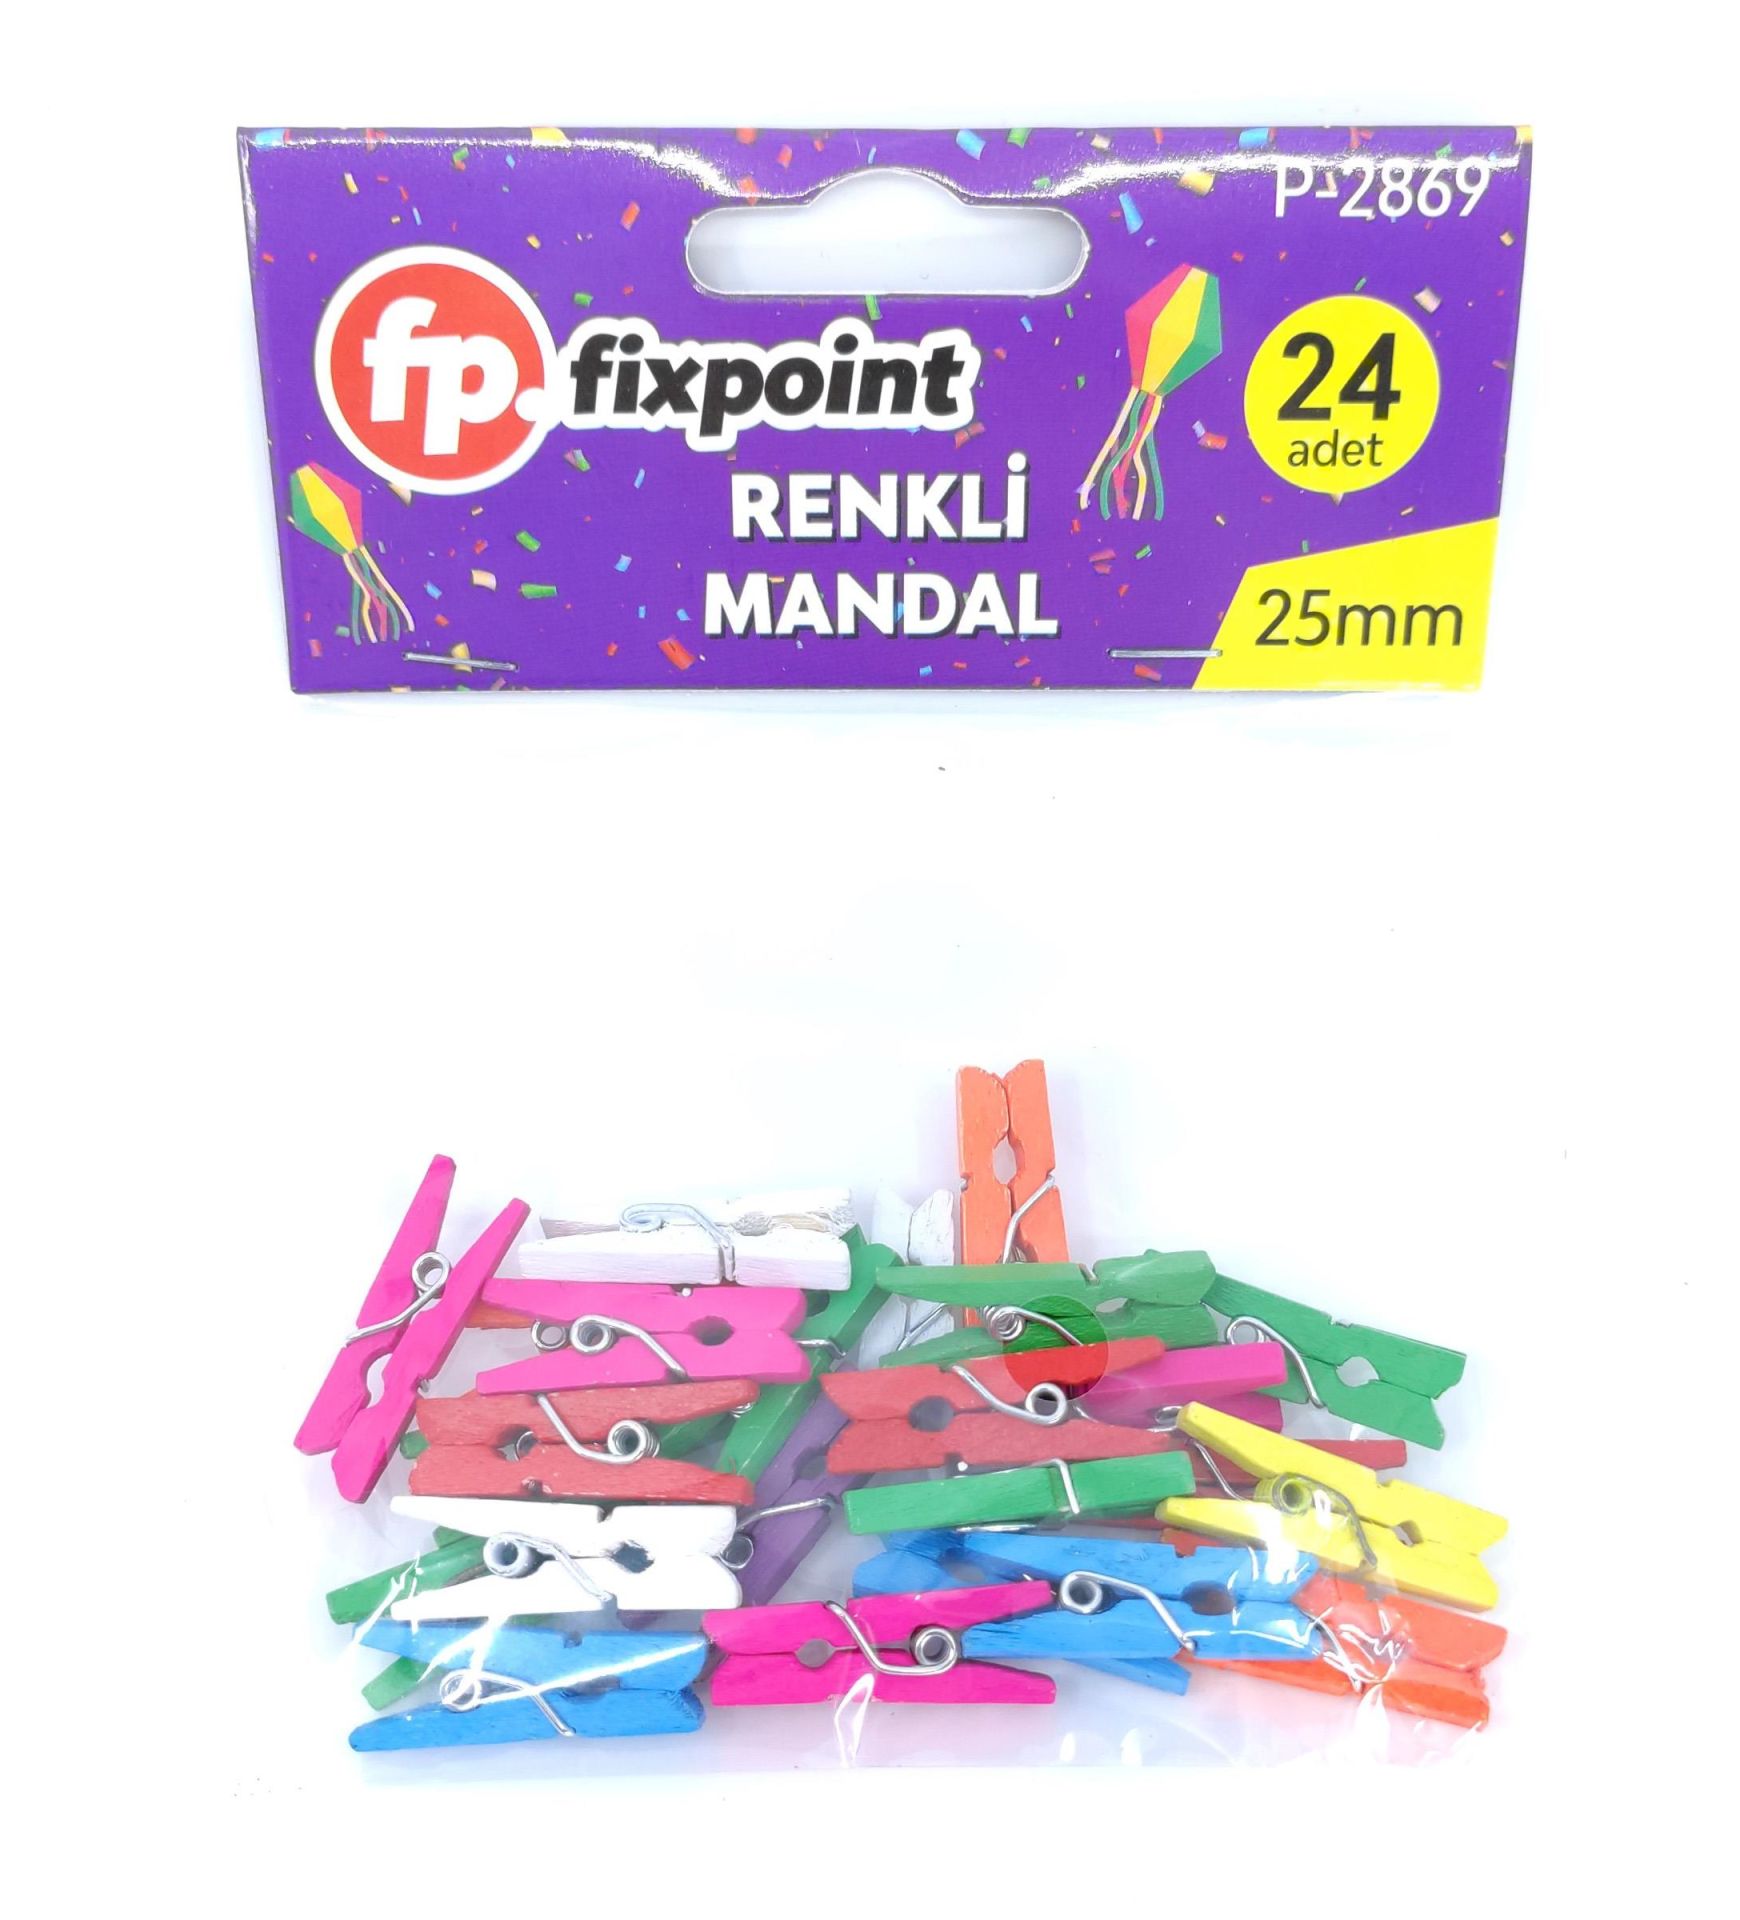 Fixpoint Renkli Küçük Ahşap Mandal 24Lü P-2869 (1 paket)